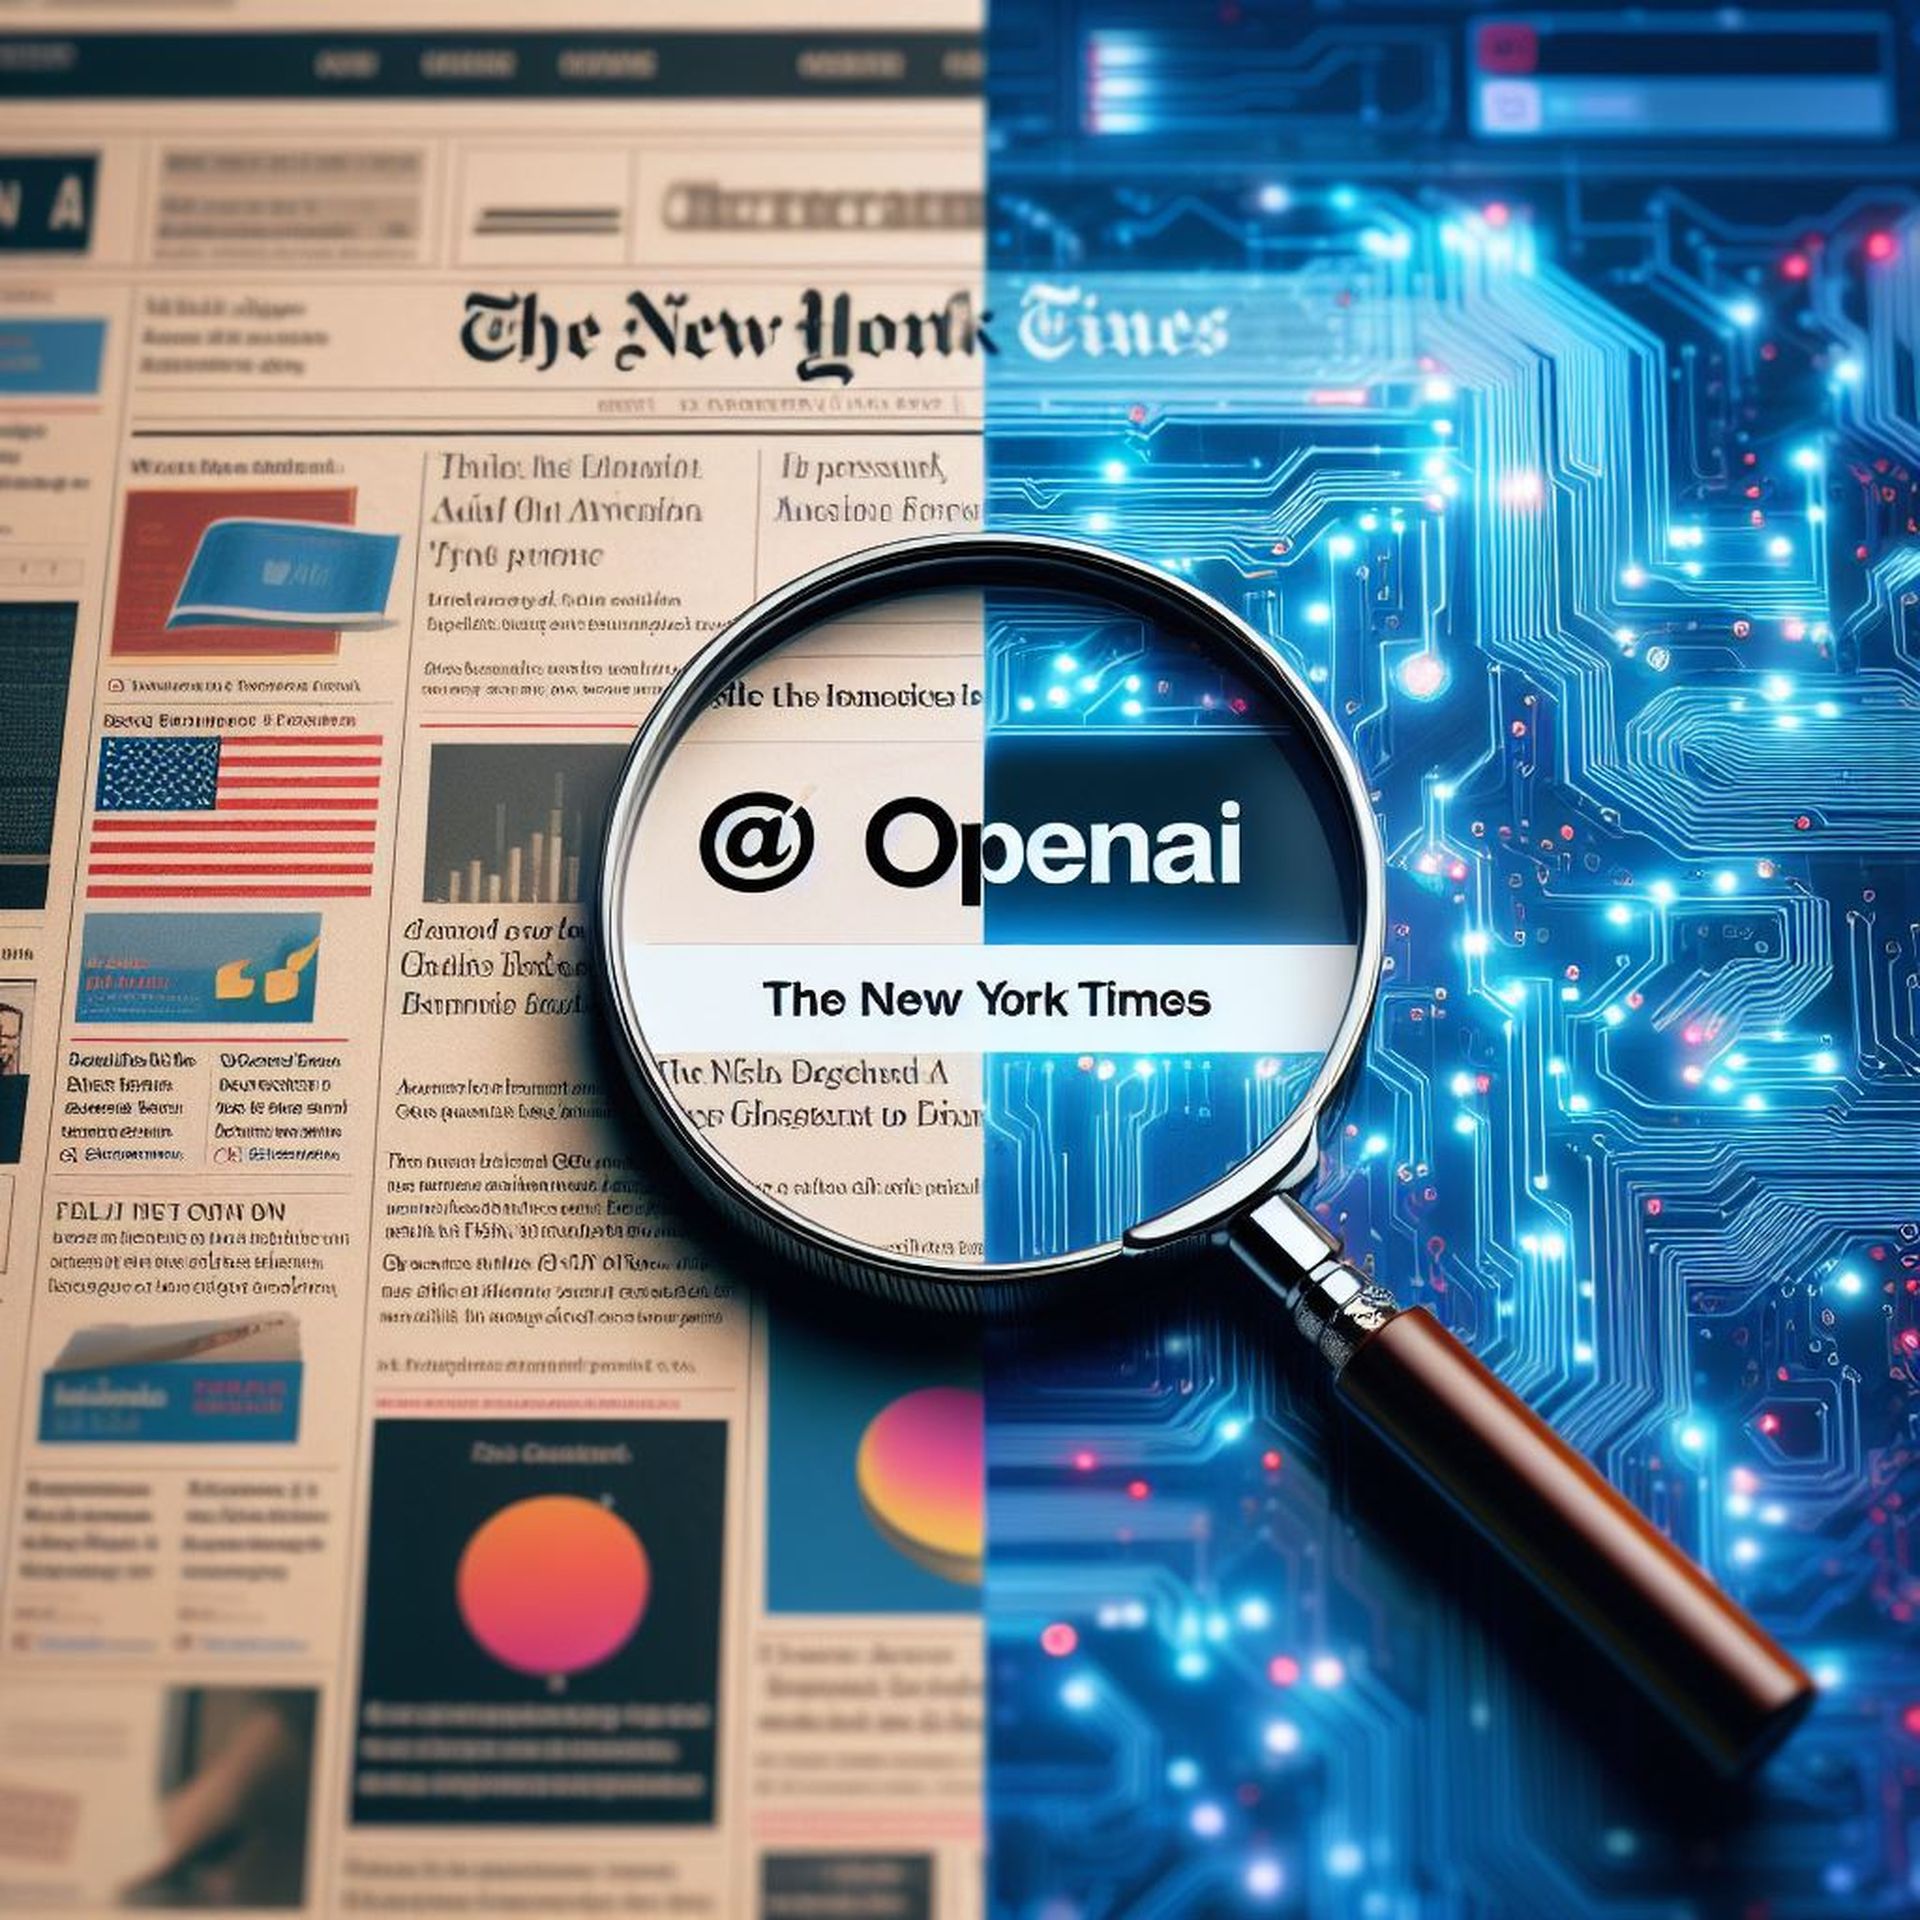 Rzekoma hipokryzja: roszczenie wzajemne OpenAI przeciwko NYT